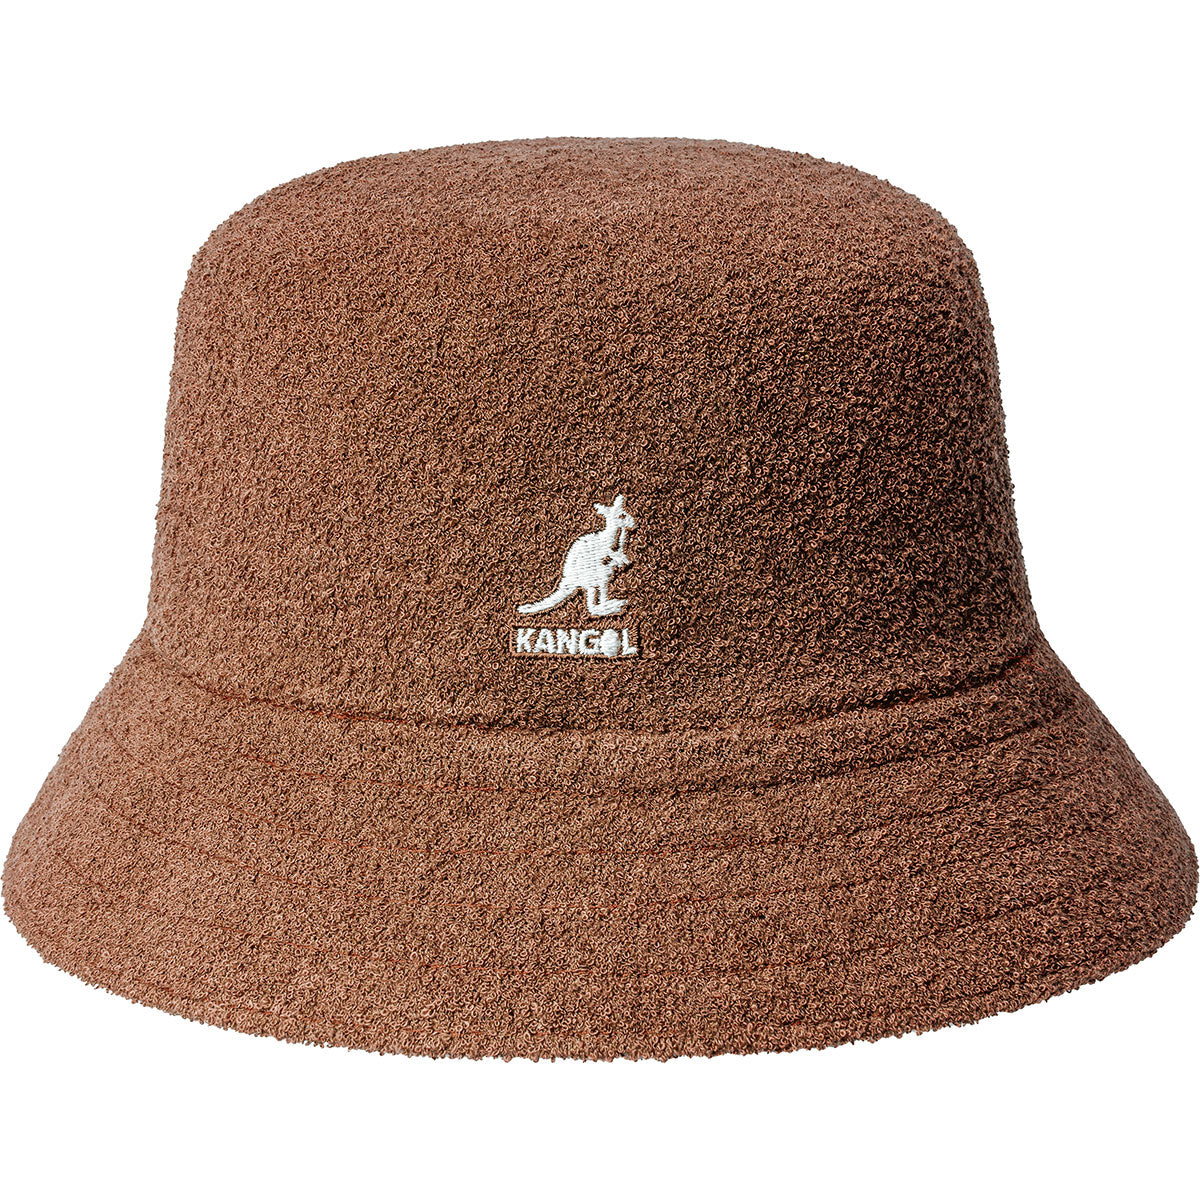 Terry Bermuda Bucket Hat by Kangol - Mahogany